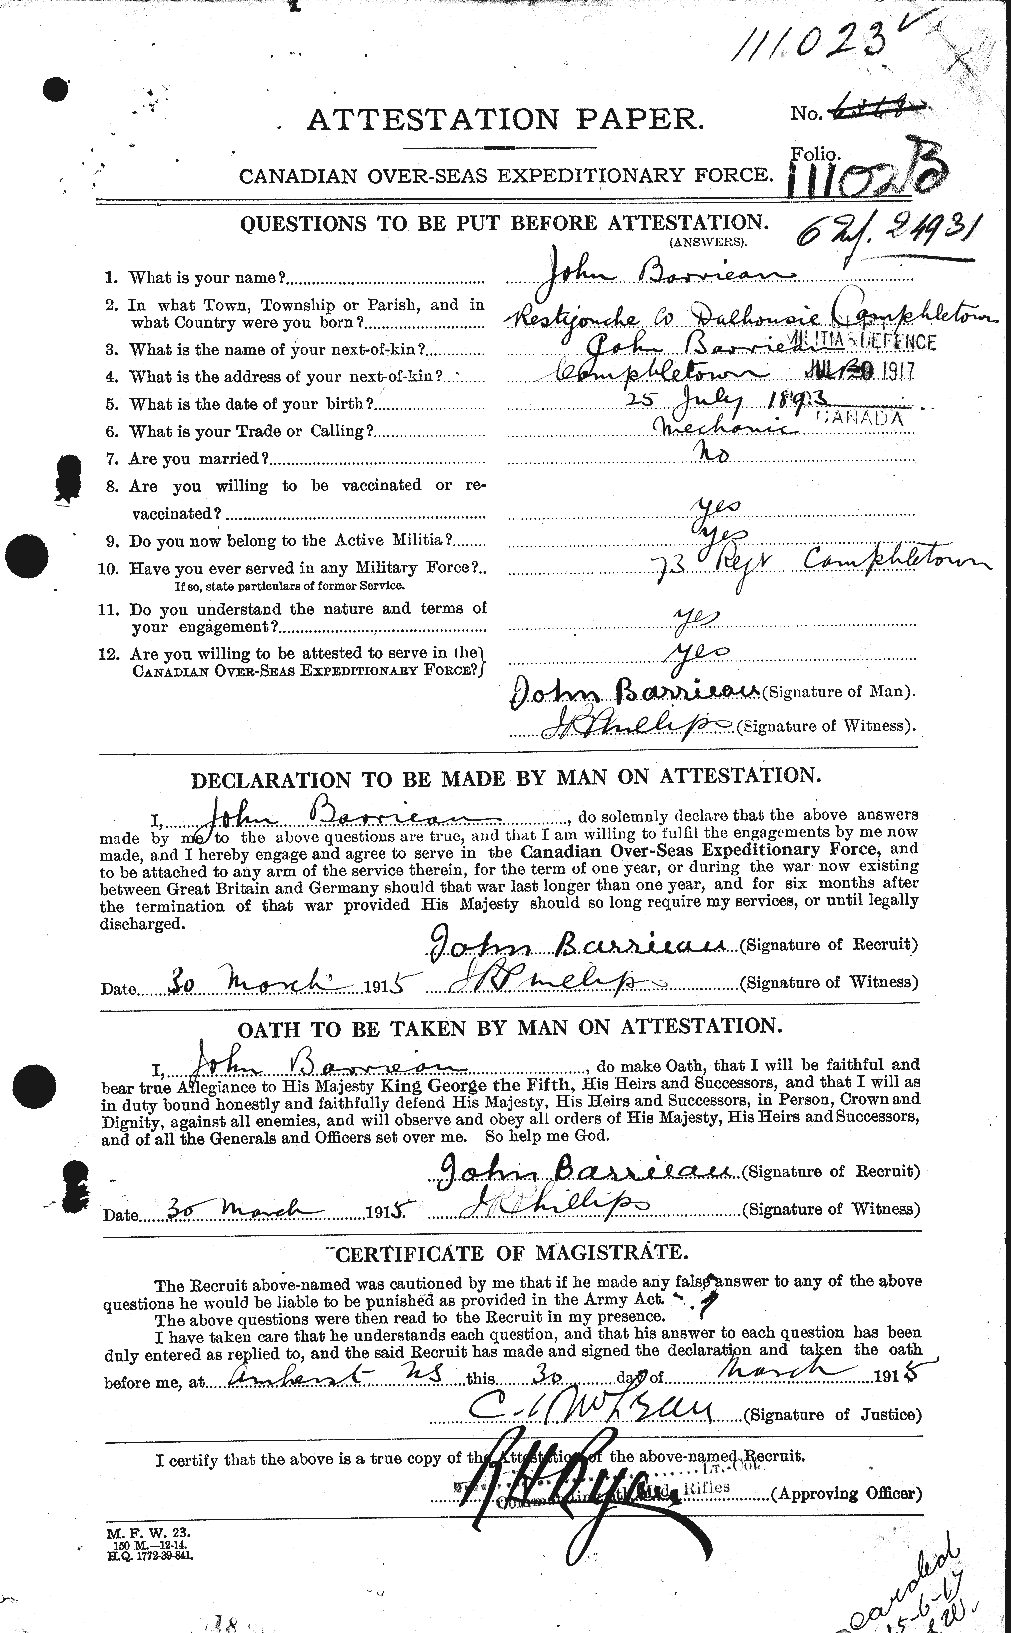 Dossiers du Personnel de la Première Guerre mondiale - CEC 220009a